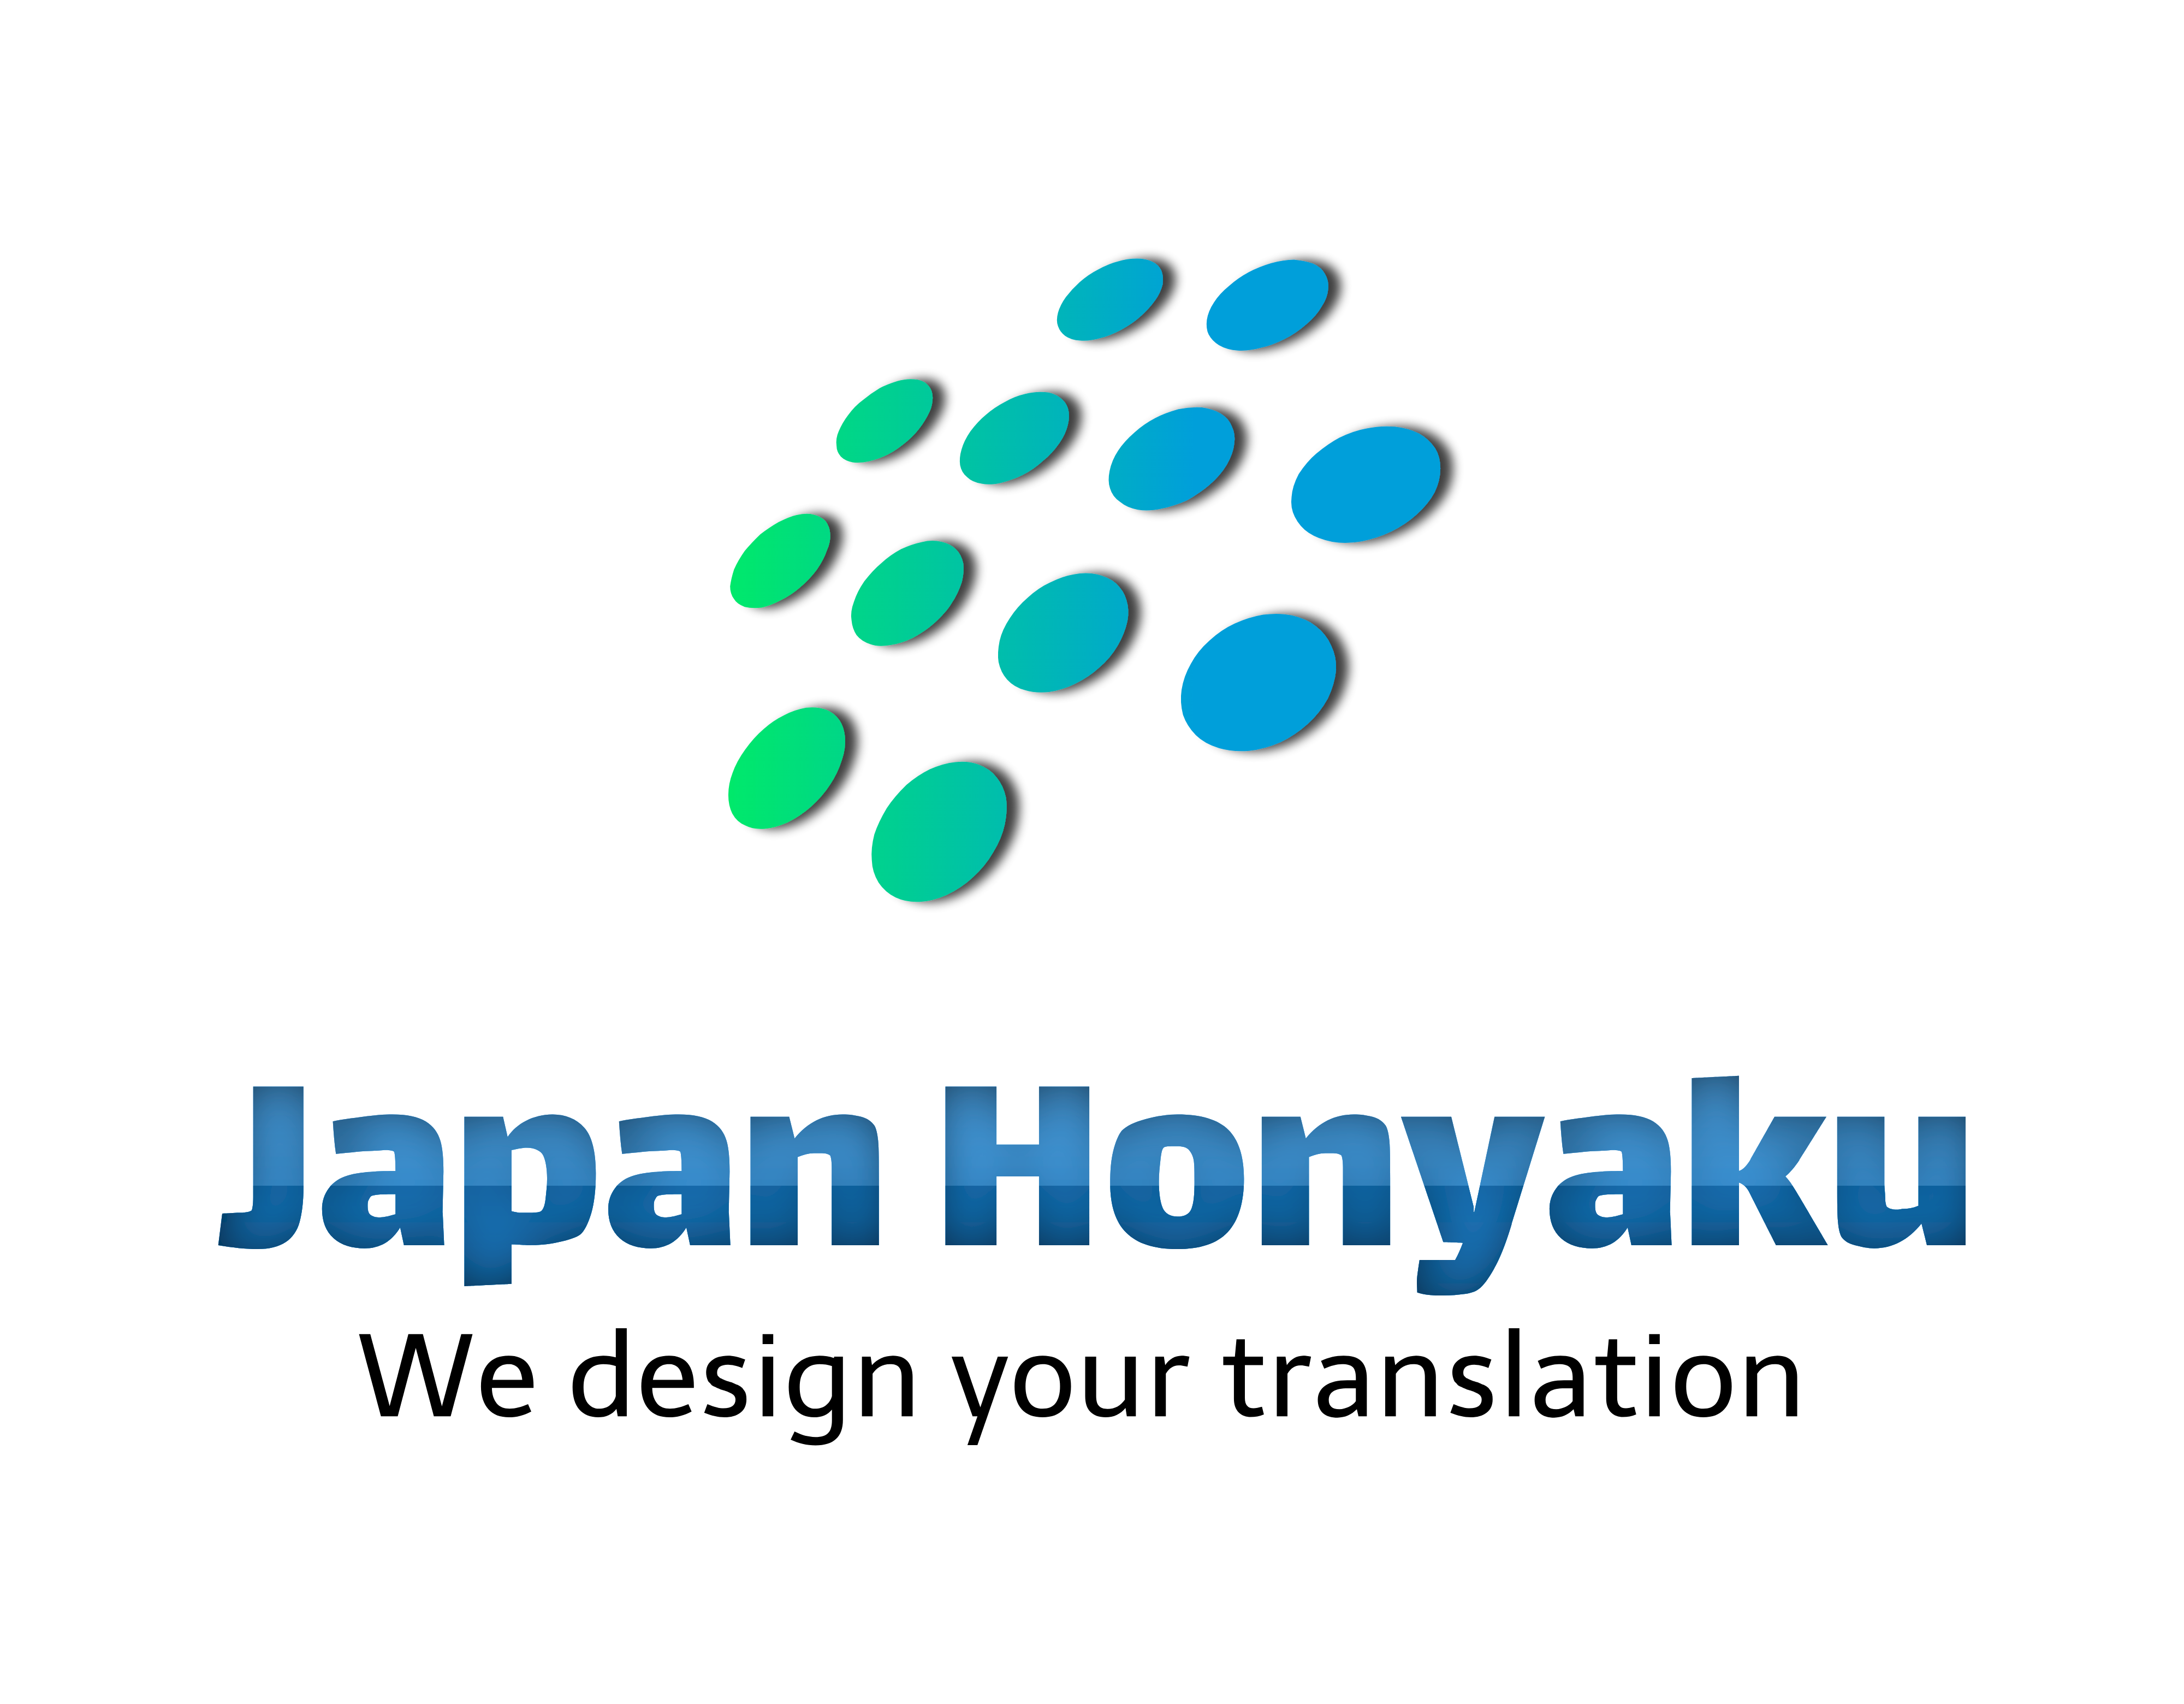 japanhonyaku_logo